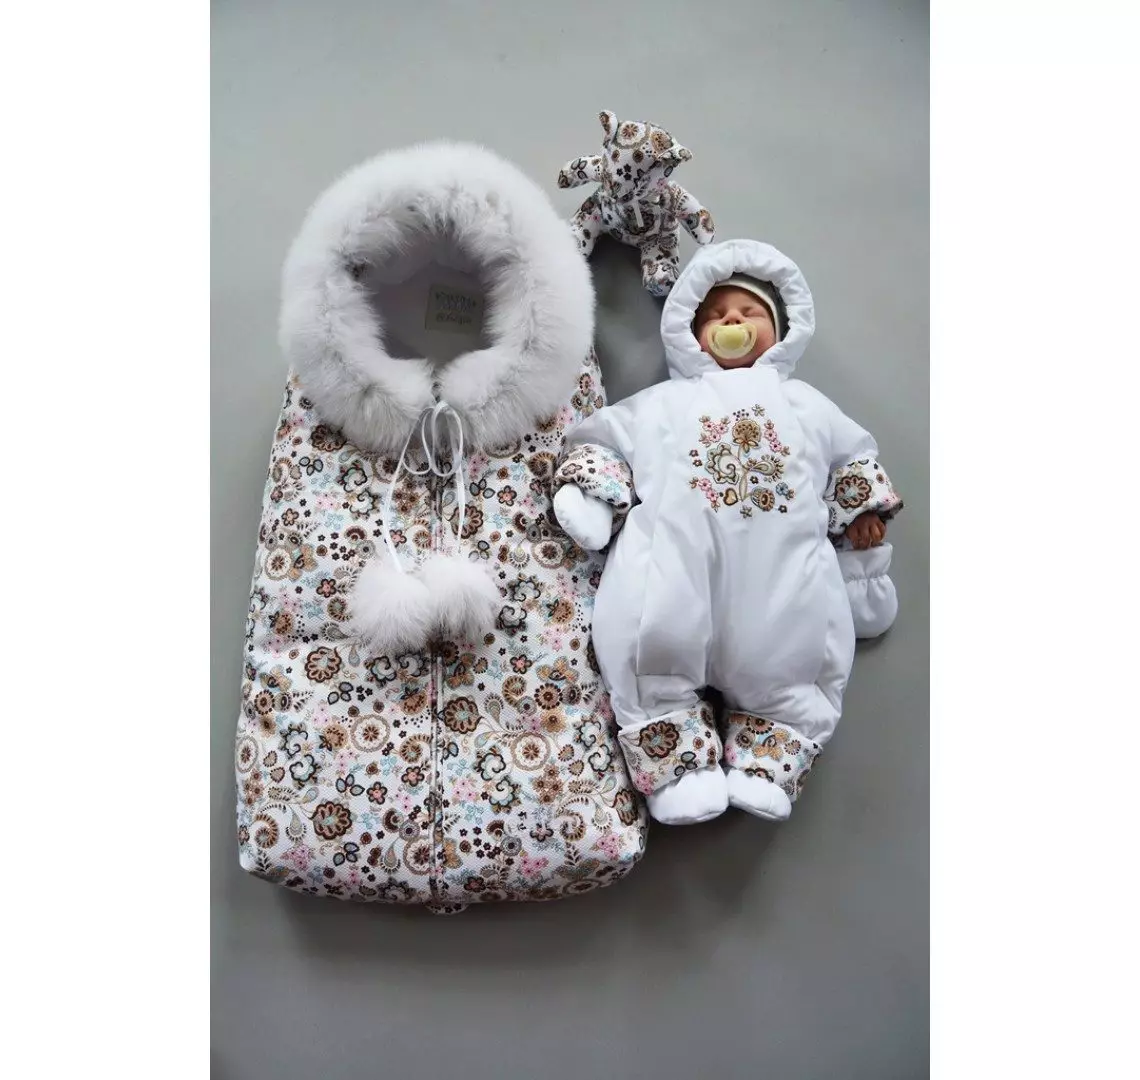 لباس های زمستانی برای نوزادان (69 عکس): لباس ترانسفورماتور، پاییز زمستان، بر روی پوست گوسفند، از کری، بر روی عصاره، چگونه انتخاب کنید 13634_32